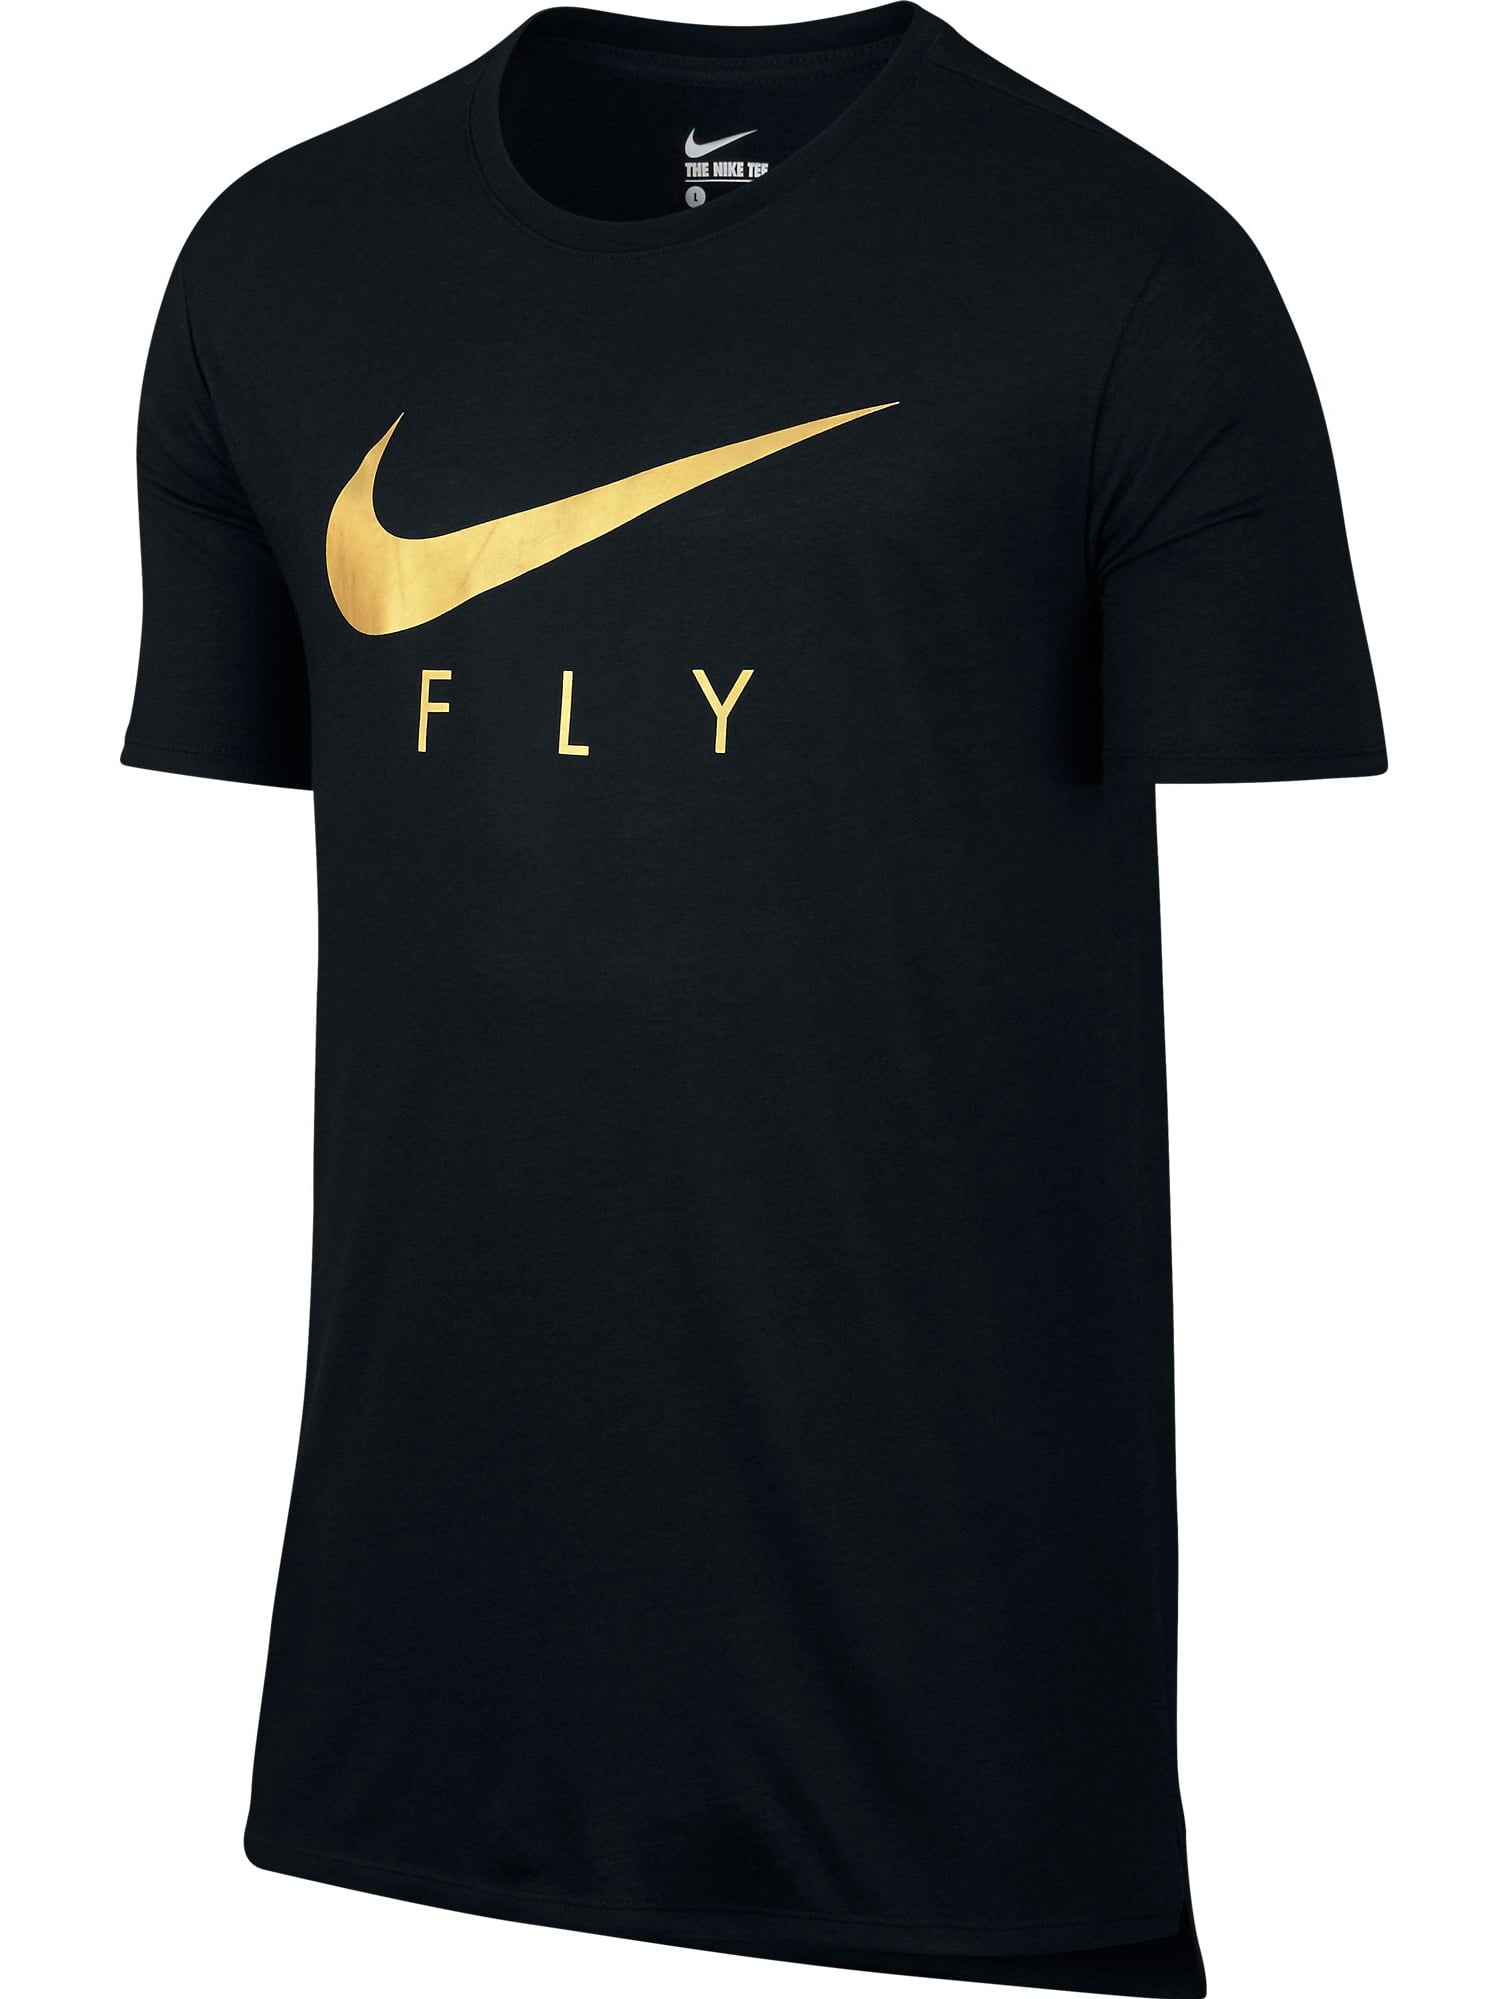 Nike - Nike Swoosh Logo Printed Fly Drop Tail Men's T-Shirt Black/Gold ...